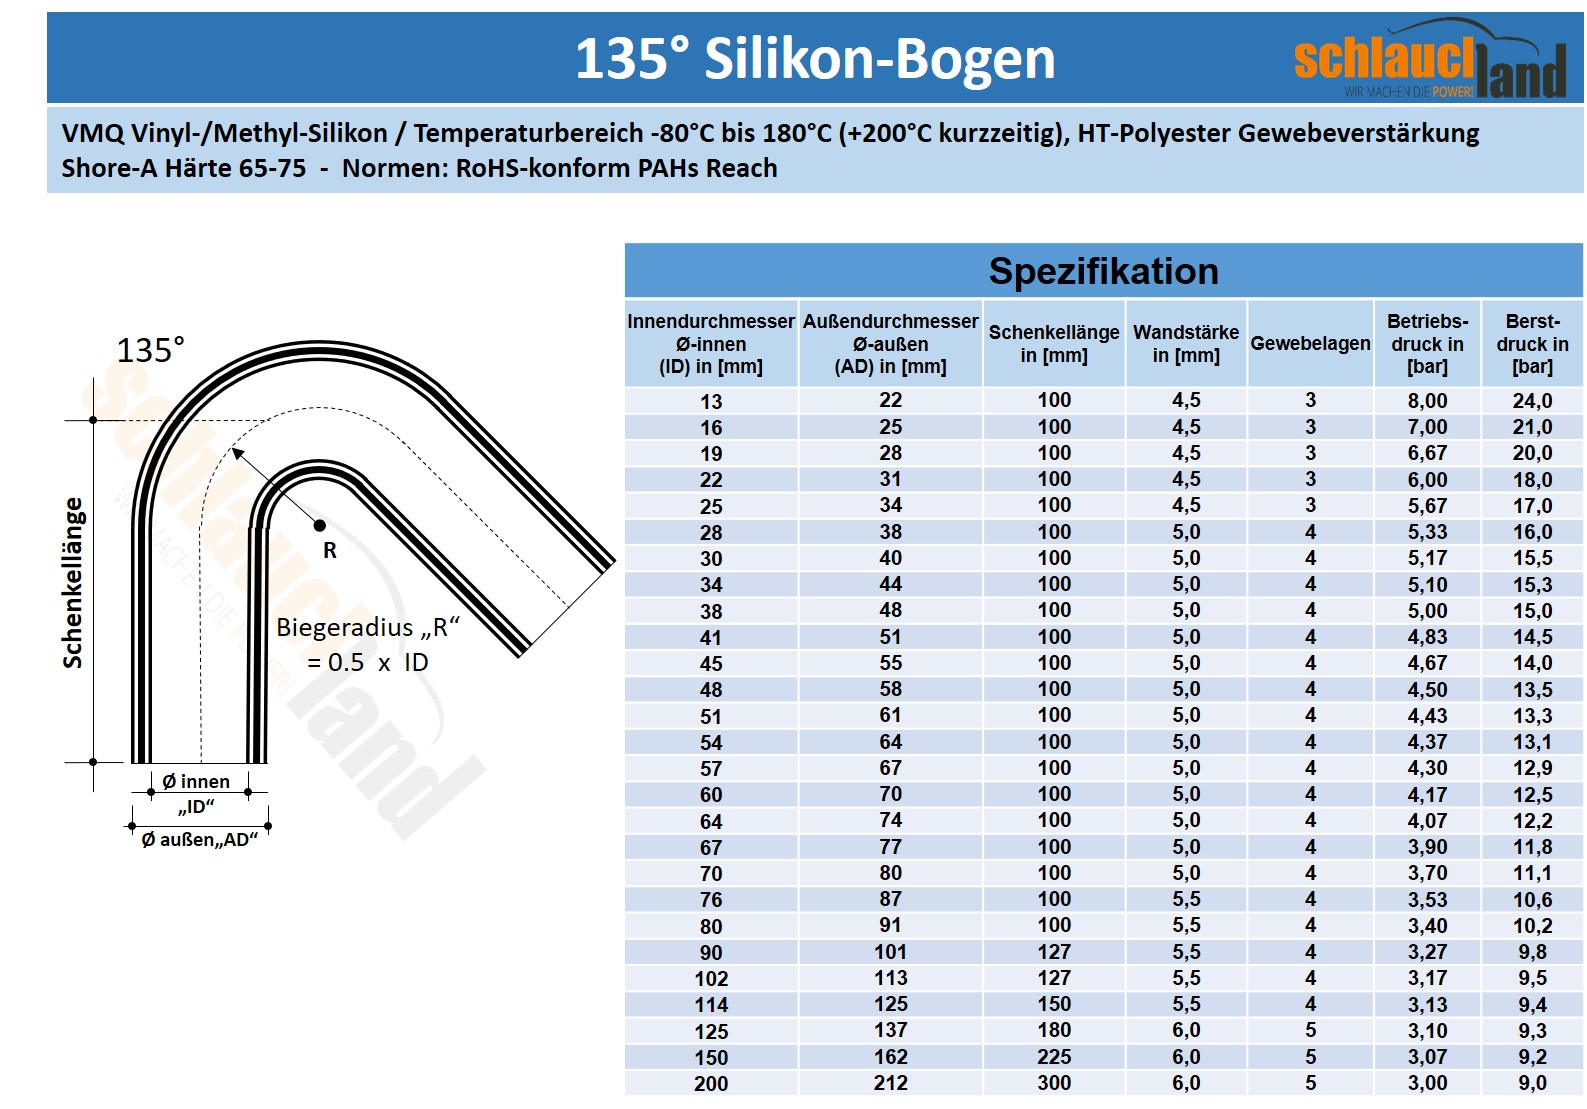 Datenblatt Silikon-Bogen 135°